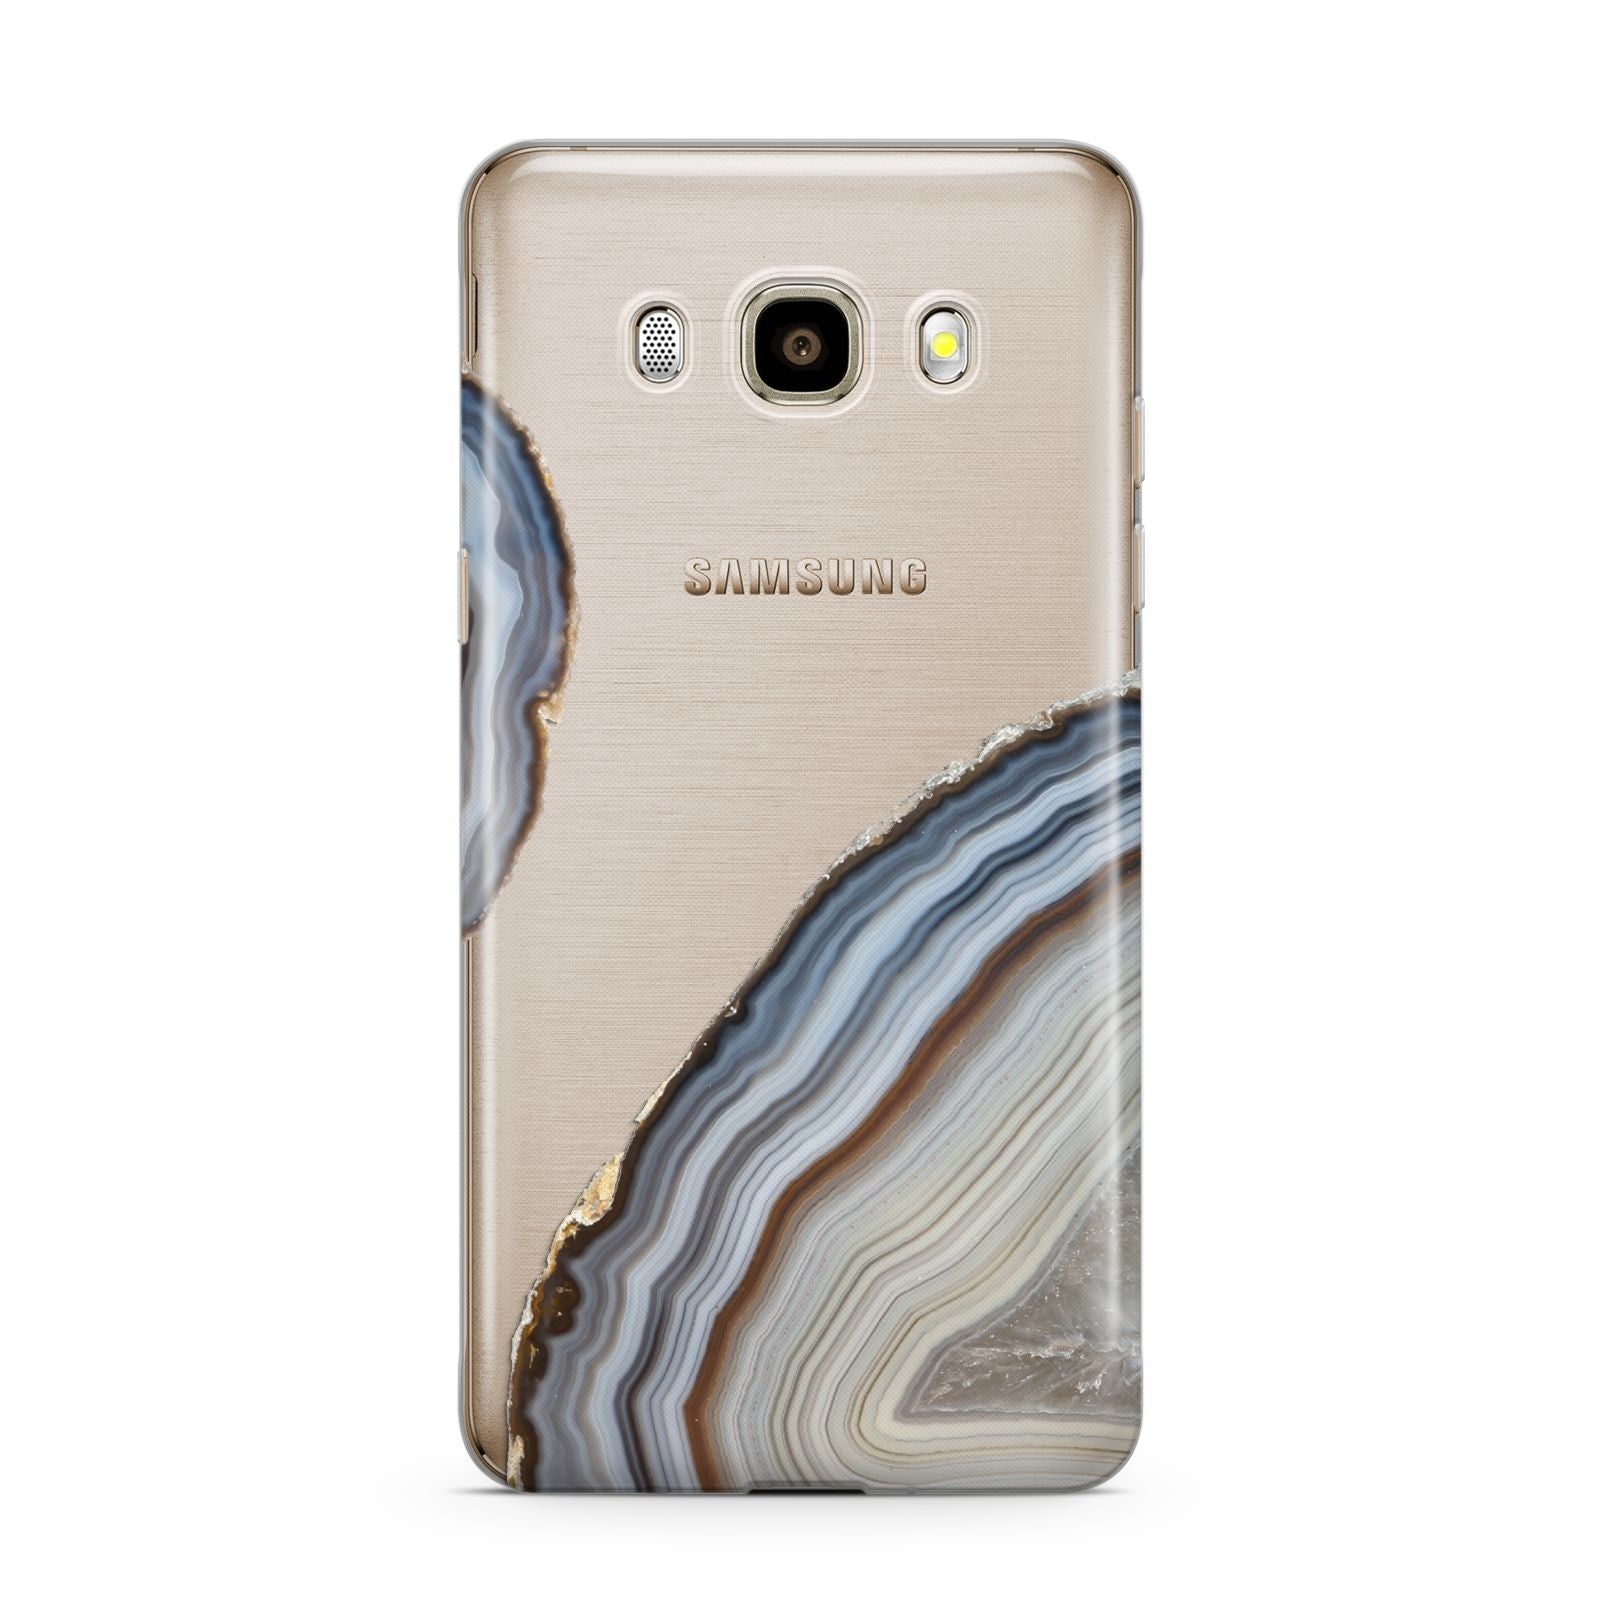 Agate Blue Grey Samsung Galaxy J7 2016 Case on gold phone